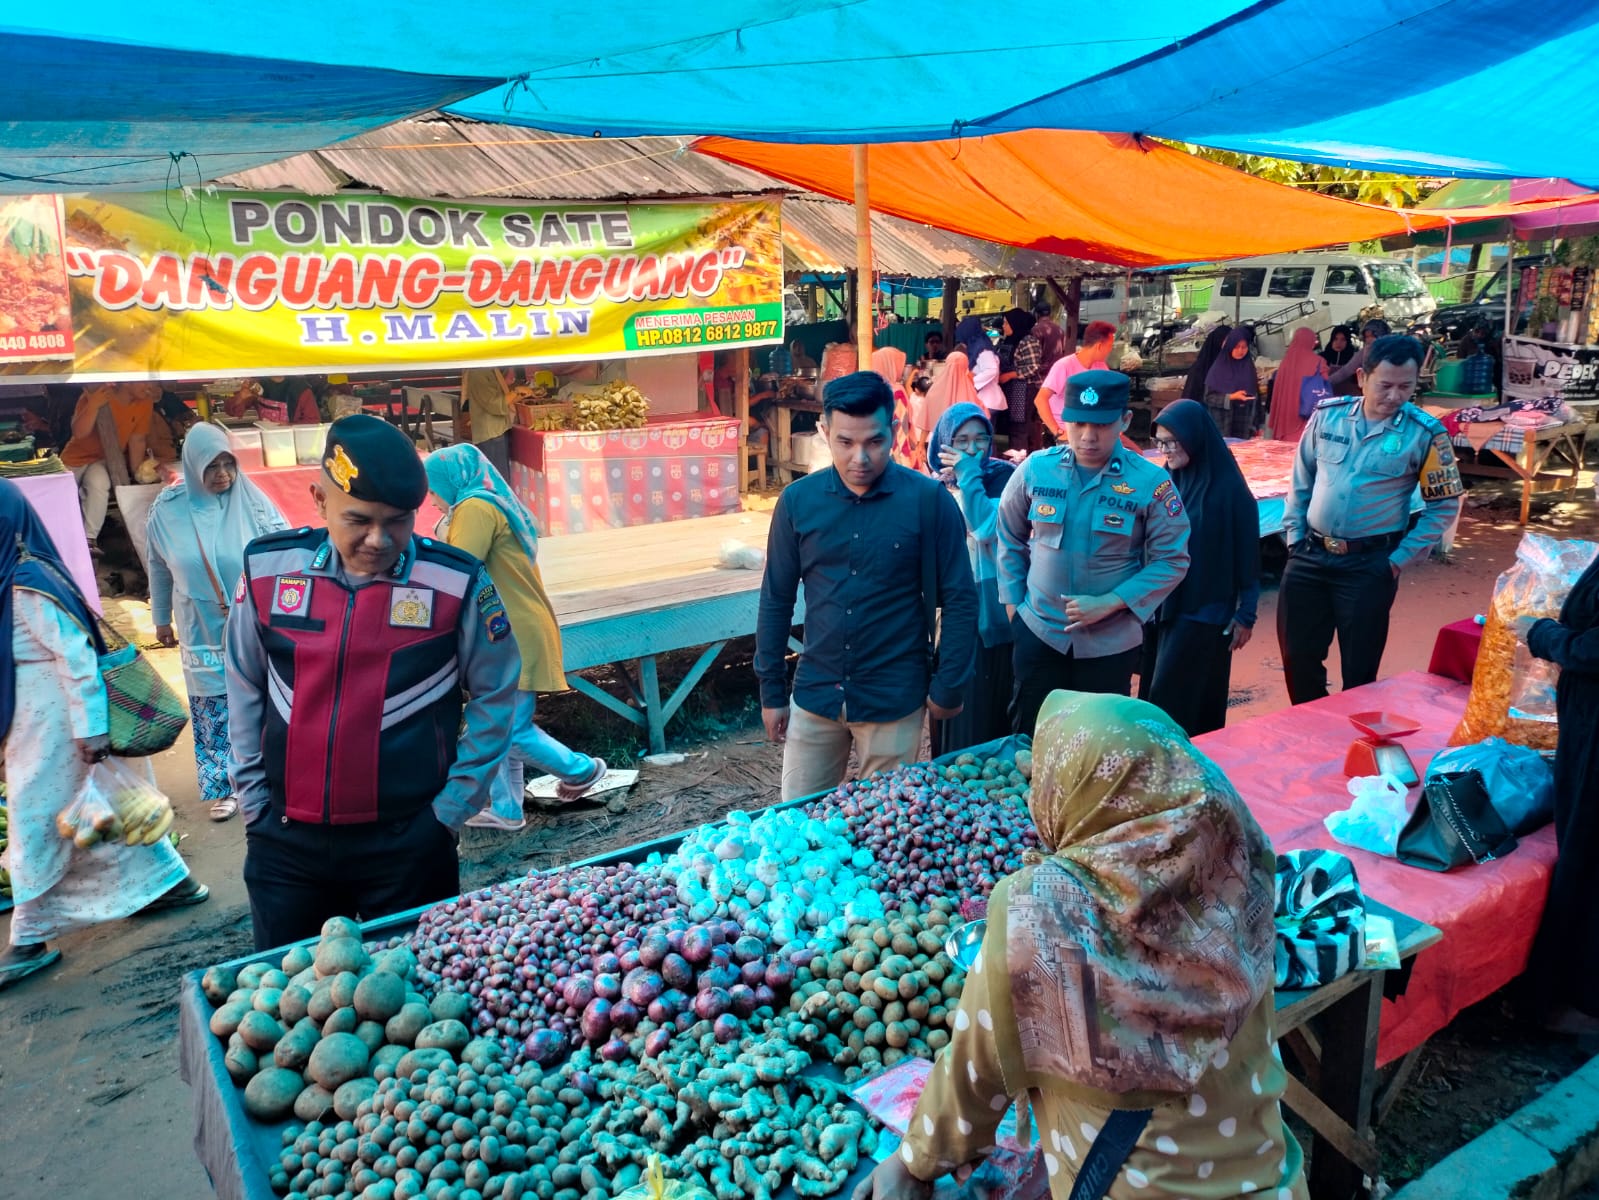 Antisipasi Gangguan Kamtibmas, Polres 50 Kota Lakukan Patroli Di Pasar Tradisional